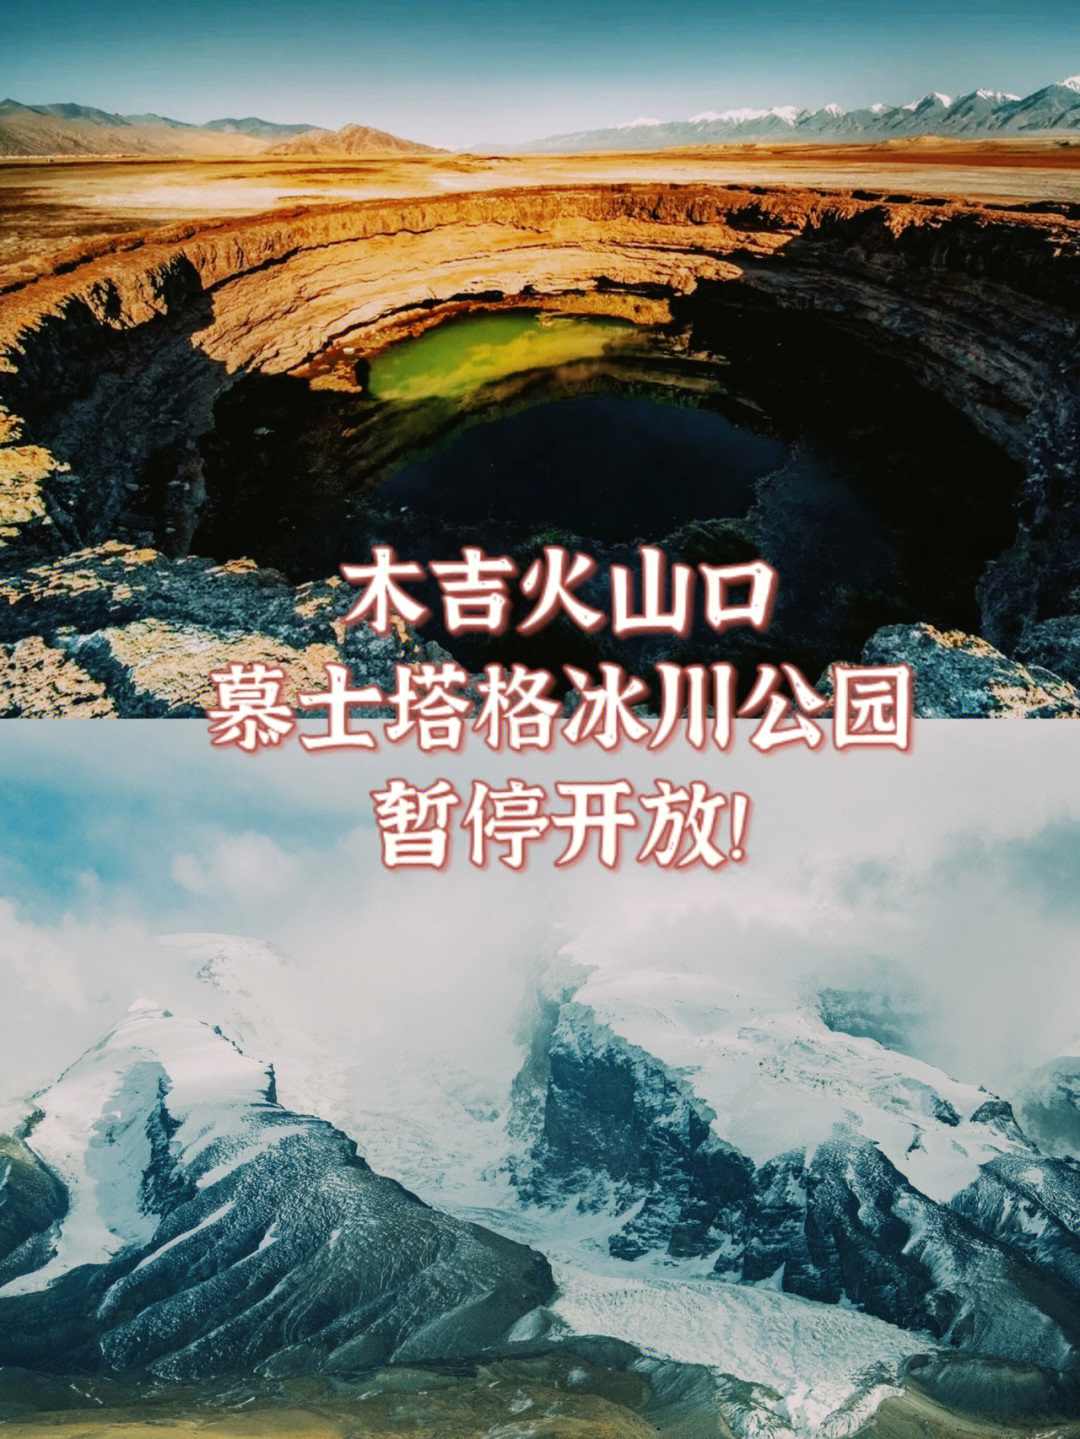 木吉火山群慕士塔格峰暂停开放要去的注意